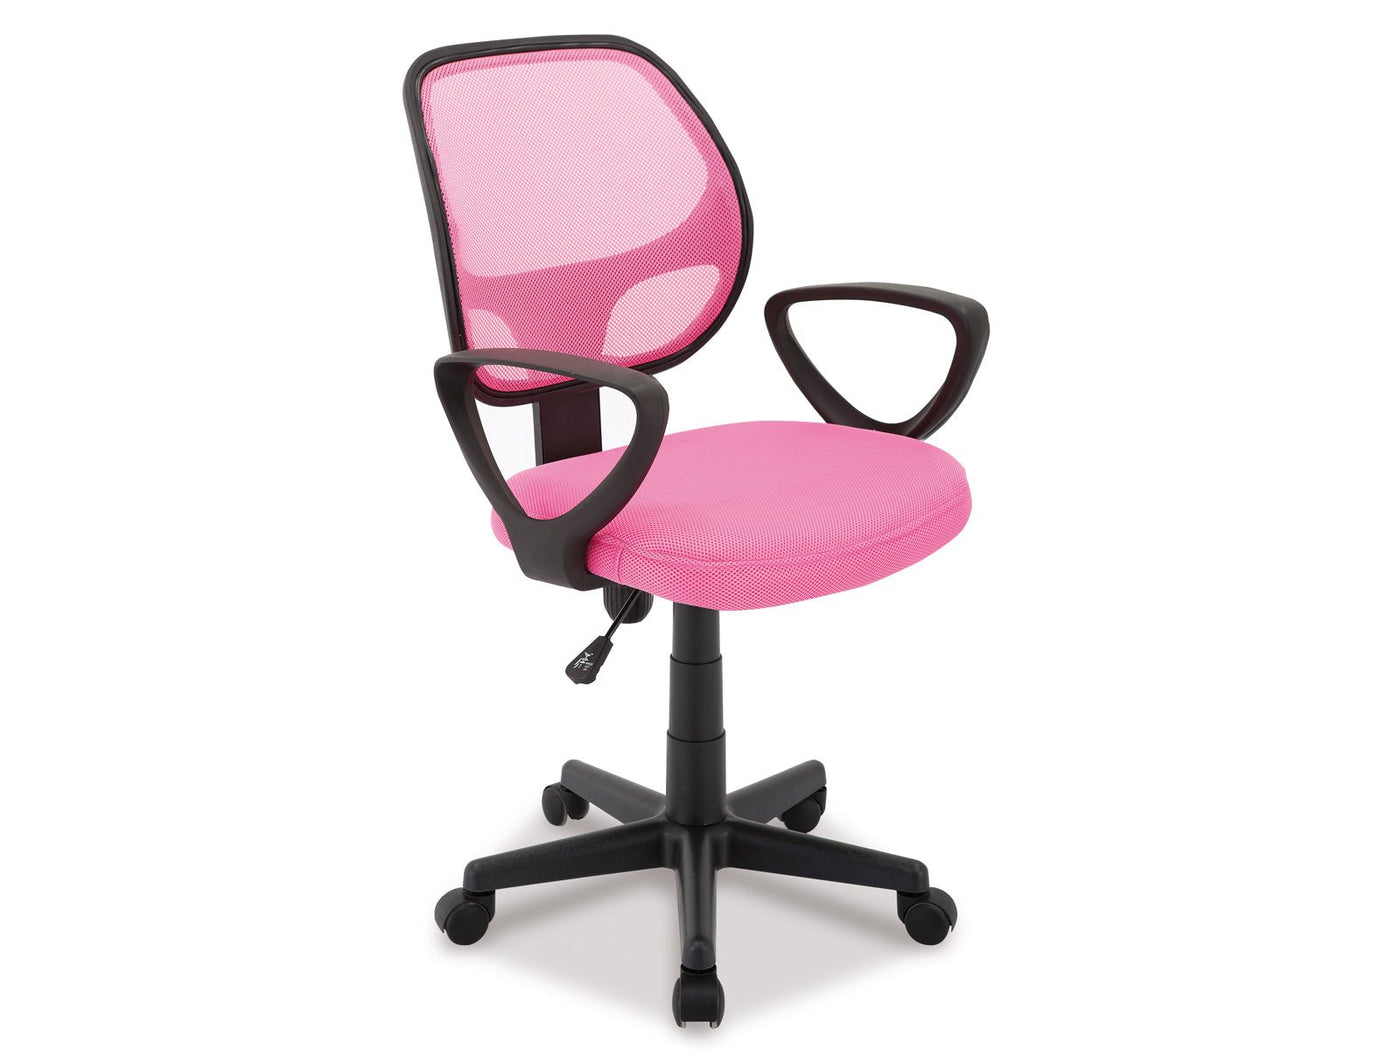 Roze ergonomische bureaustoel met mesh rugleuning en verstelbare hoogte. Moderne stoel met armleuningen en wielen, ideaal voor comfort en ondersteuning in een kantoor of thuiswerkplek.